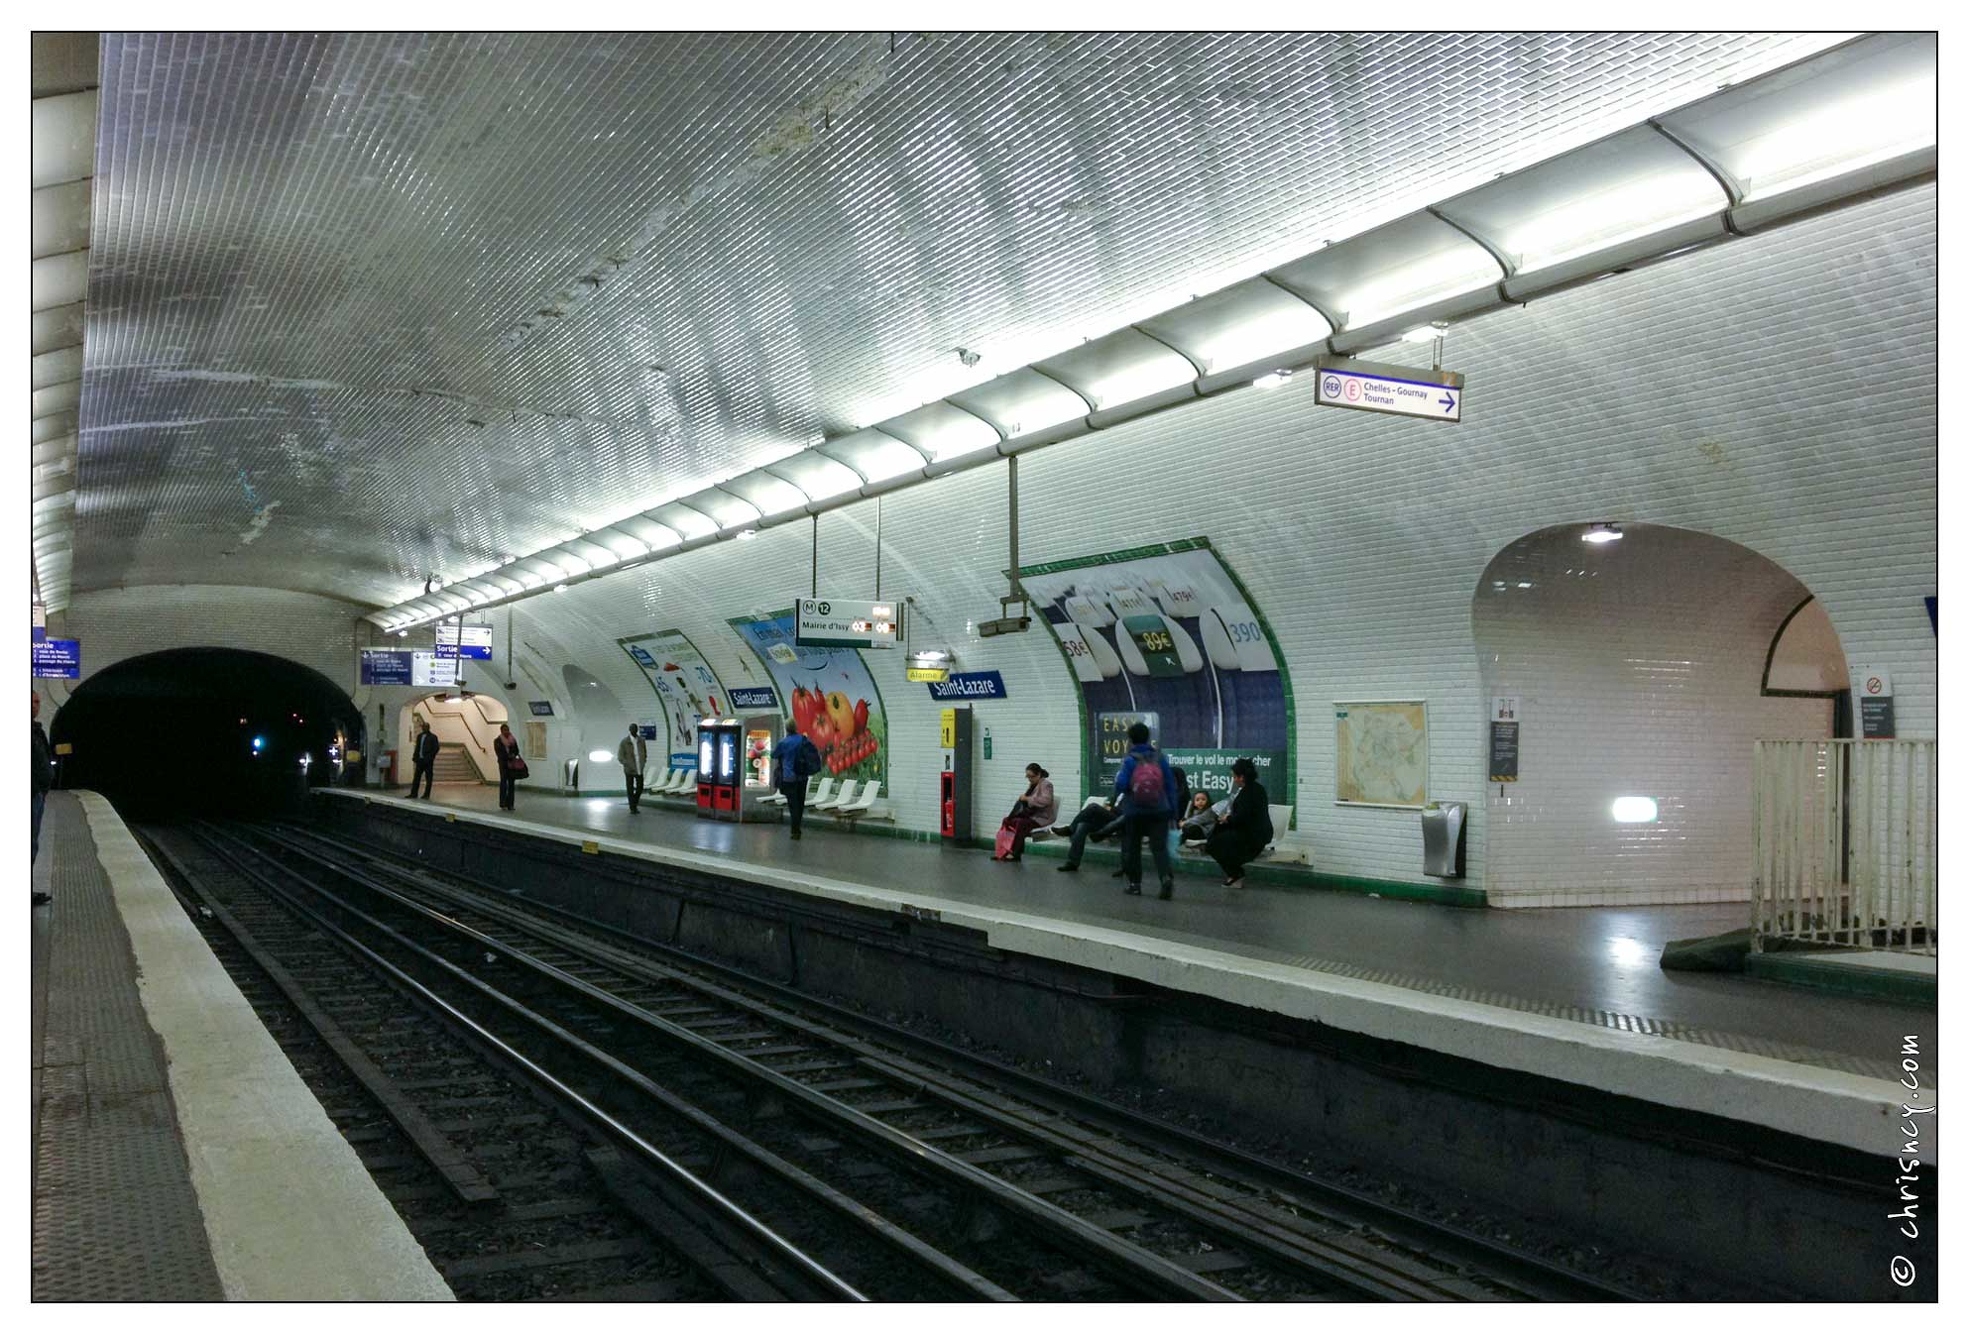 20130519-1968-Paris_Metro_St_Lazare.jpg